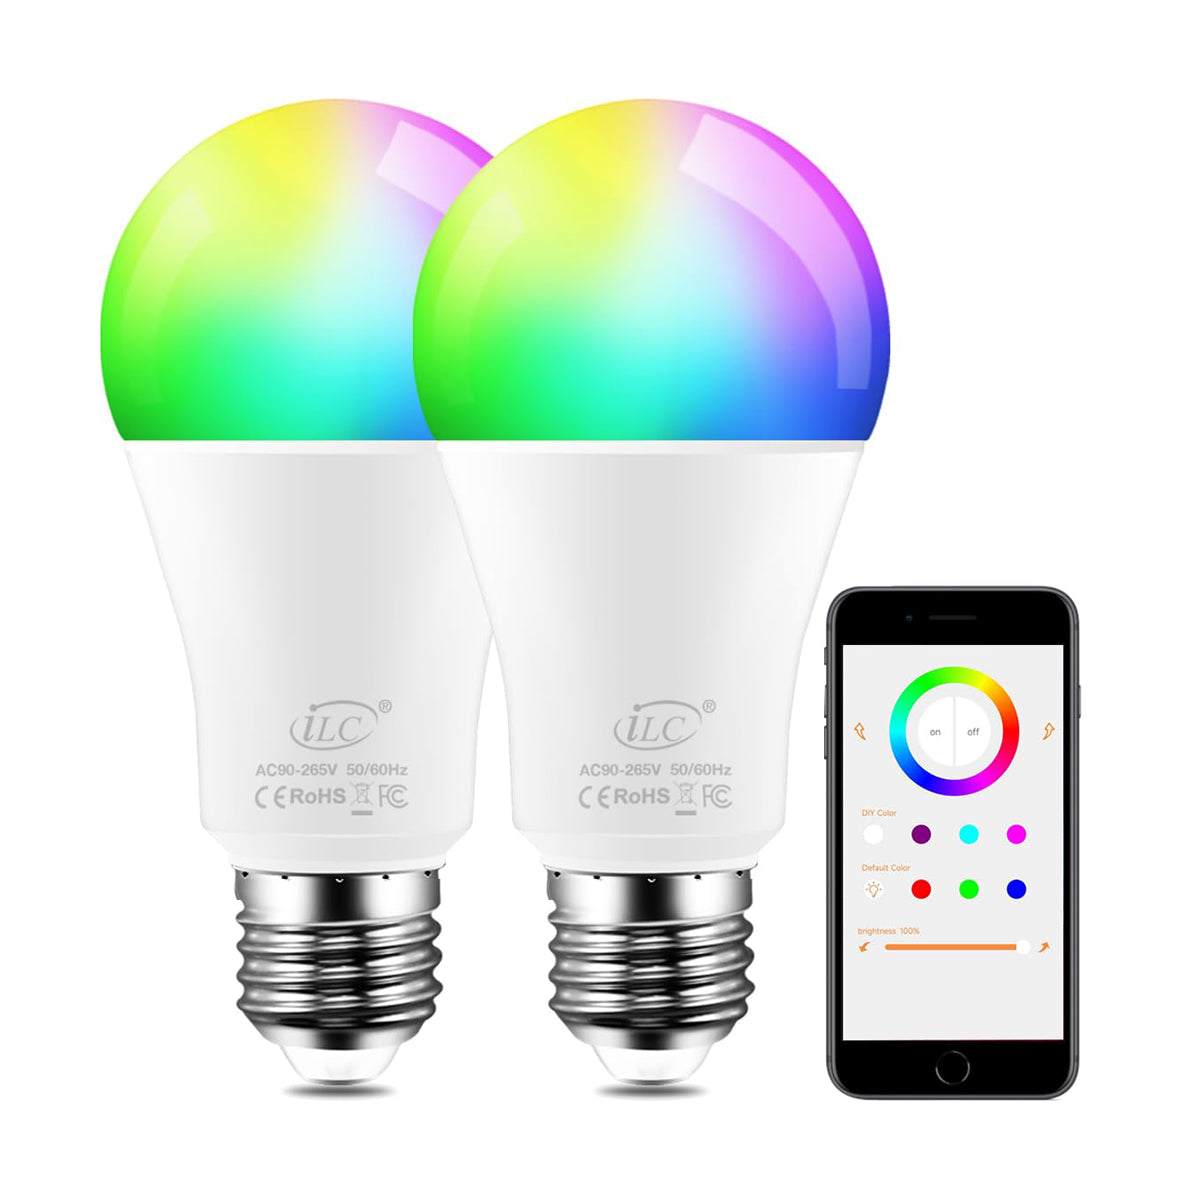 iLC Ampoule LED à changement de couleur RGBW 2700 K Blanc chaud, contrôlée par application, synchronisation avec la musique, intensité variable RVB multicolore, équivalent à 70 W, vis Edison E26 (lot de 2)